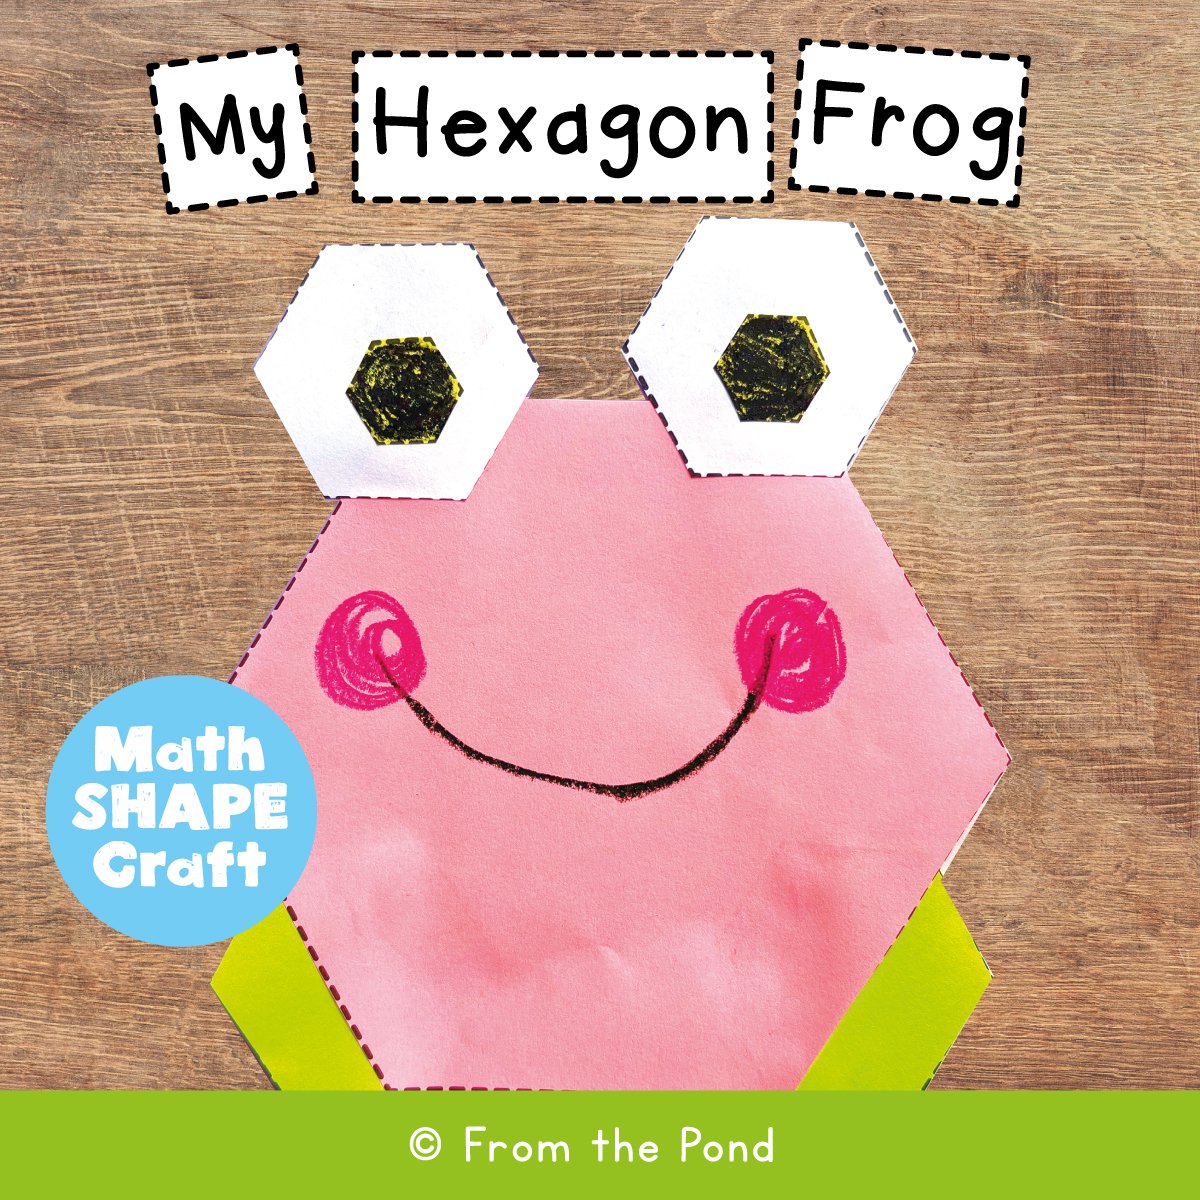 hexagon-frog.jpg